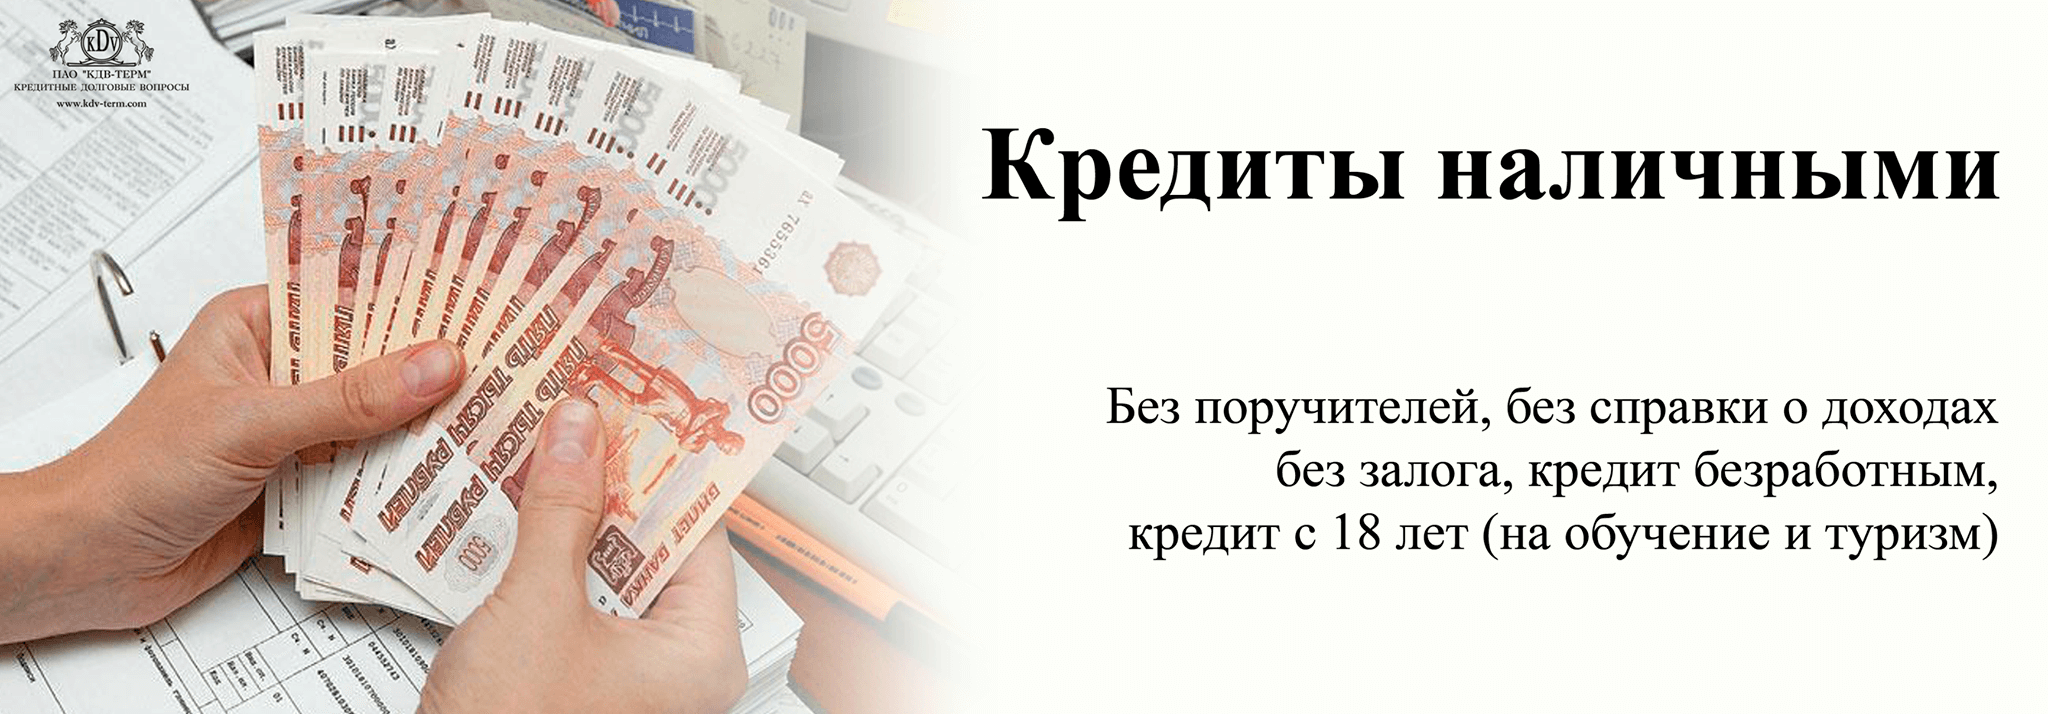 Займы наличными в Новосибирске без проверок по паспорту срочно мгновенно без отказа